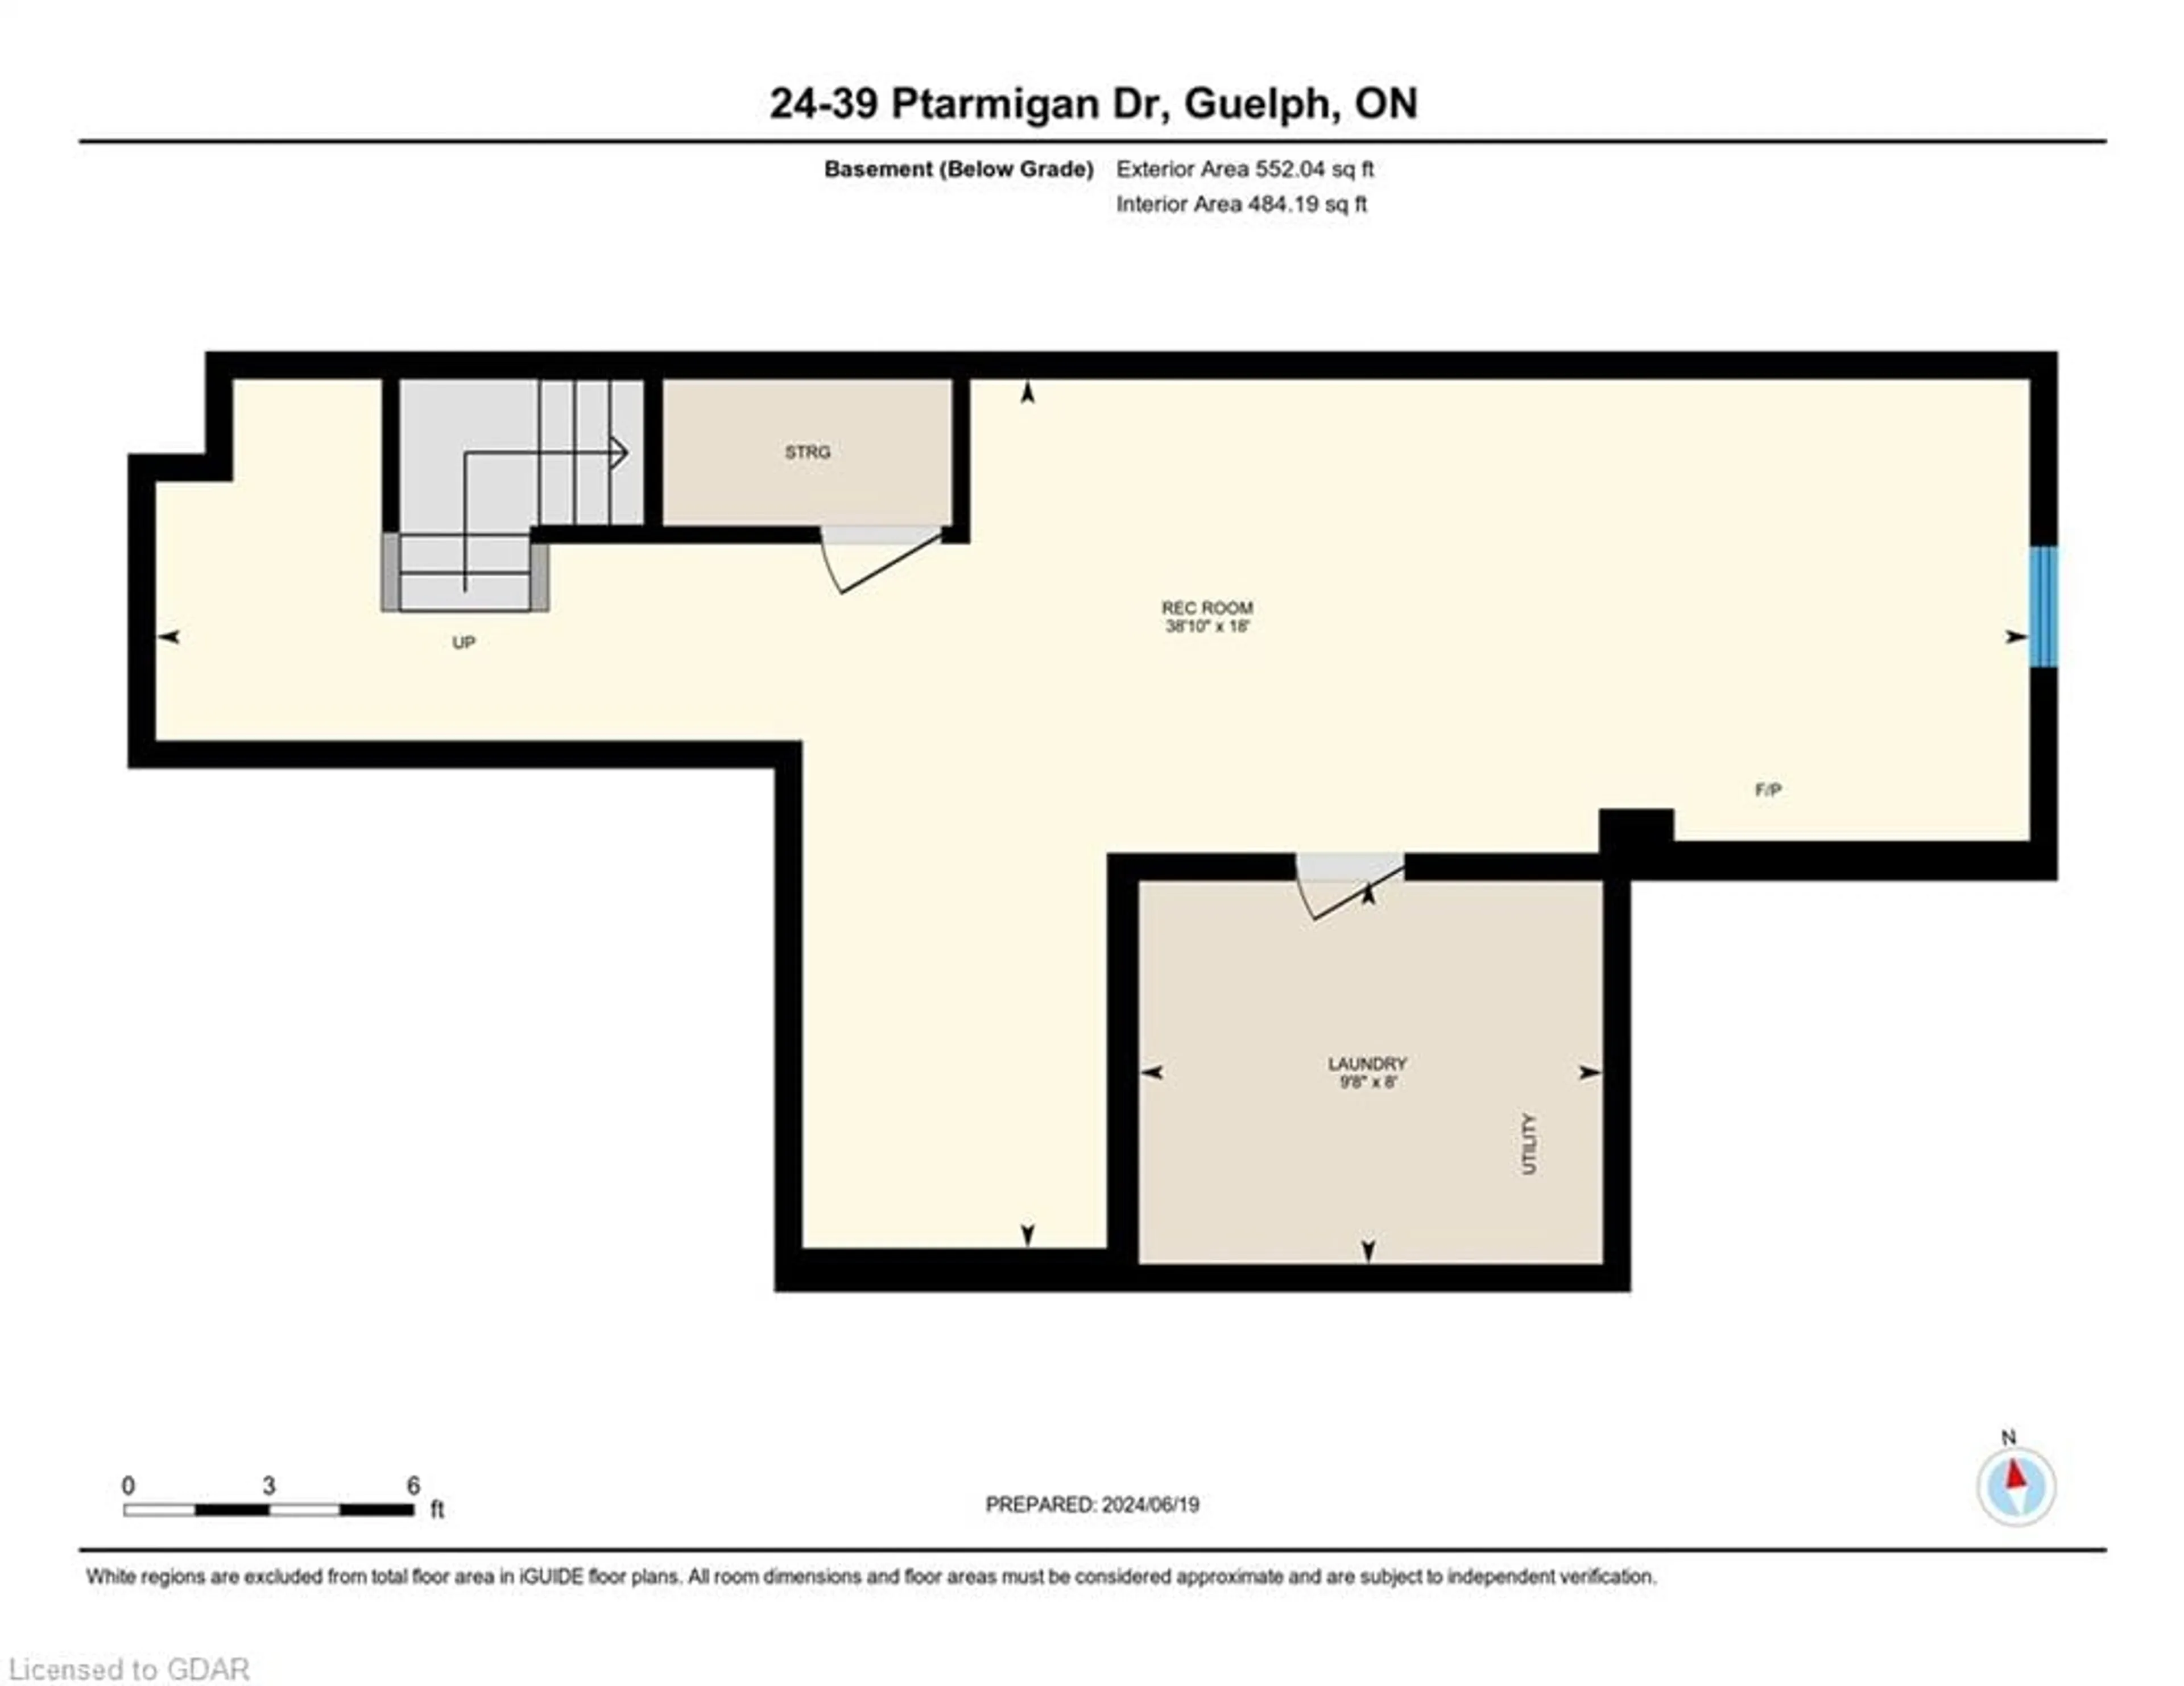 Floor plan for 39 Ptarmigan Dr Dr #24, Guelph Ontario N1C 1E8